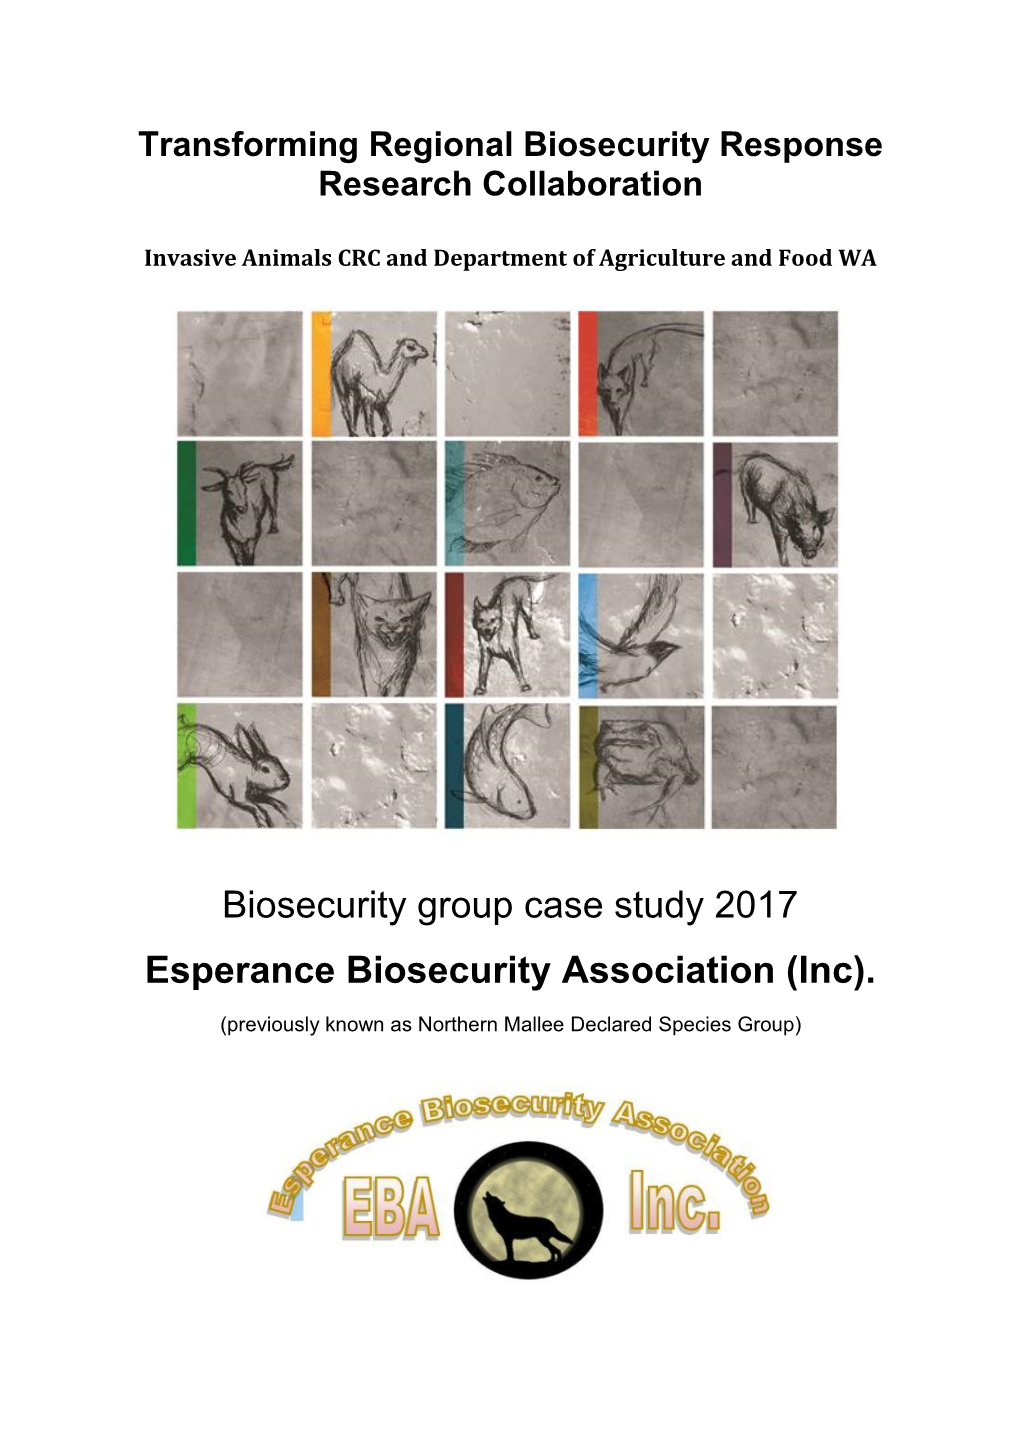 Esperance Biosecurity Association (Inc)